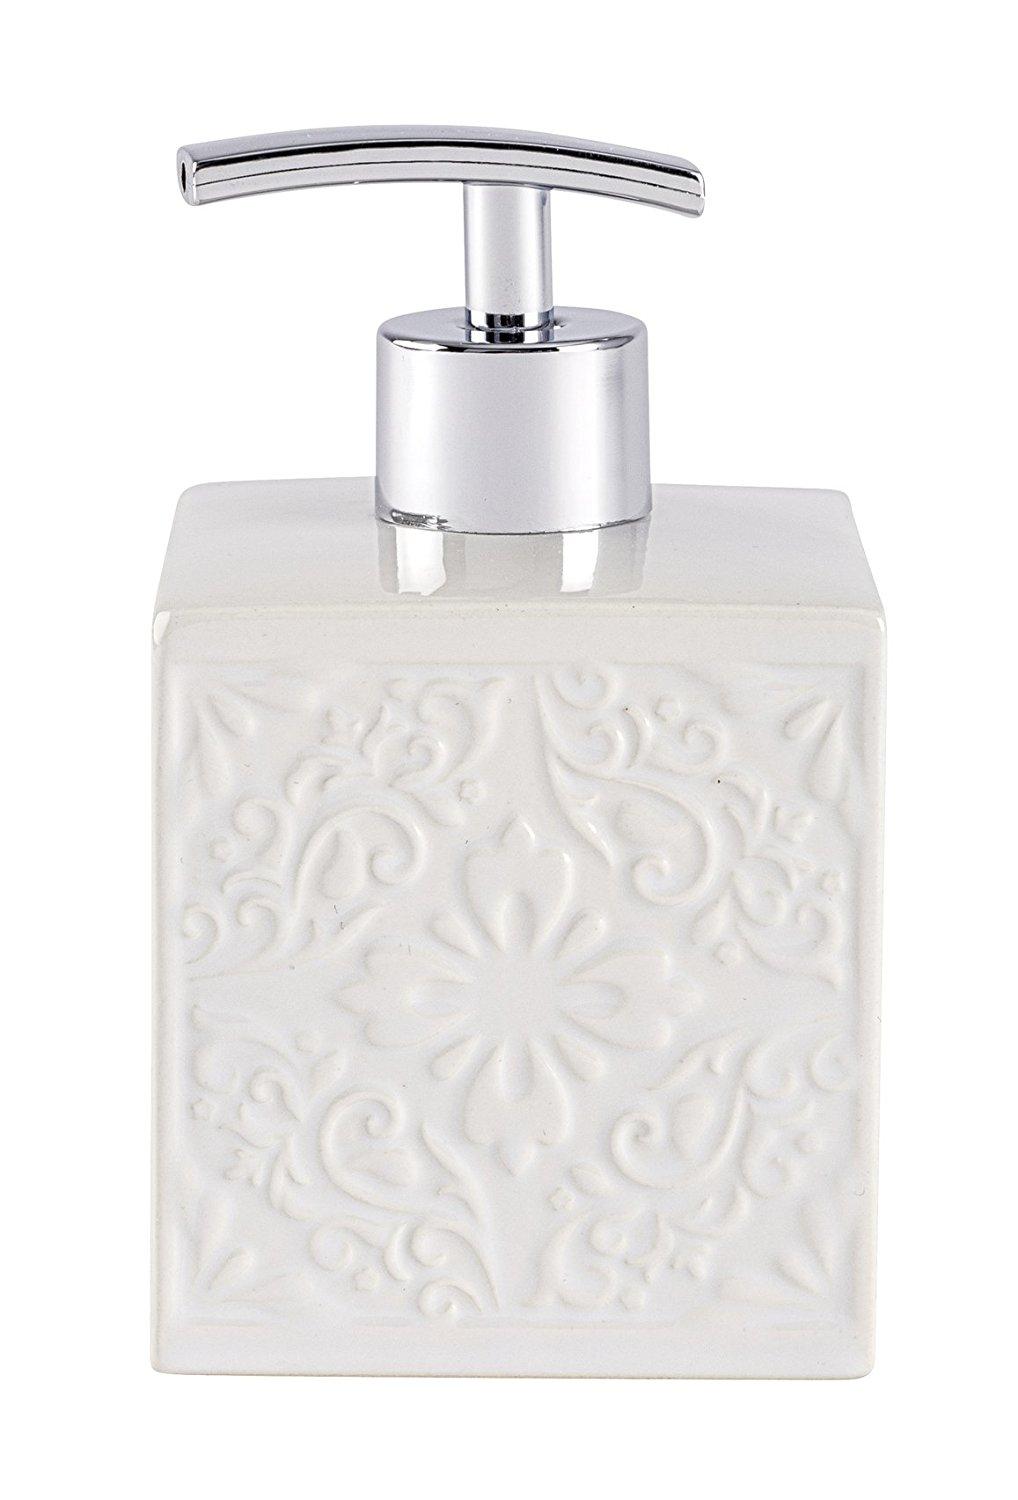 Cordoba white soap dispenser